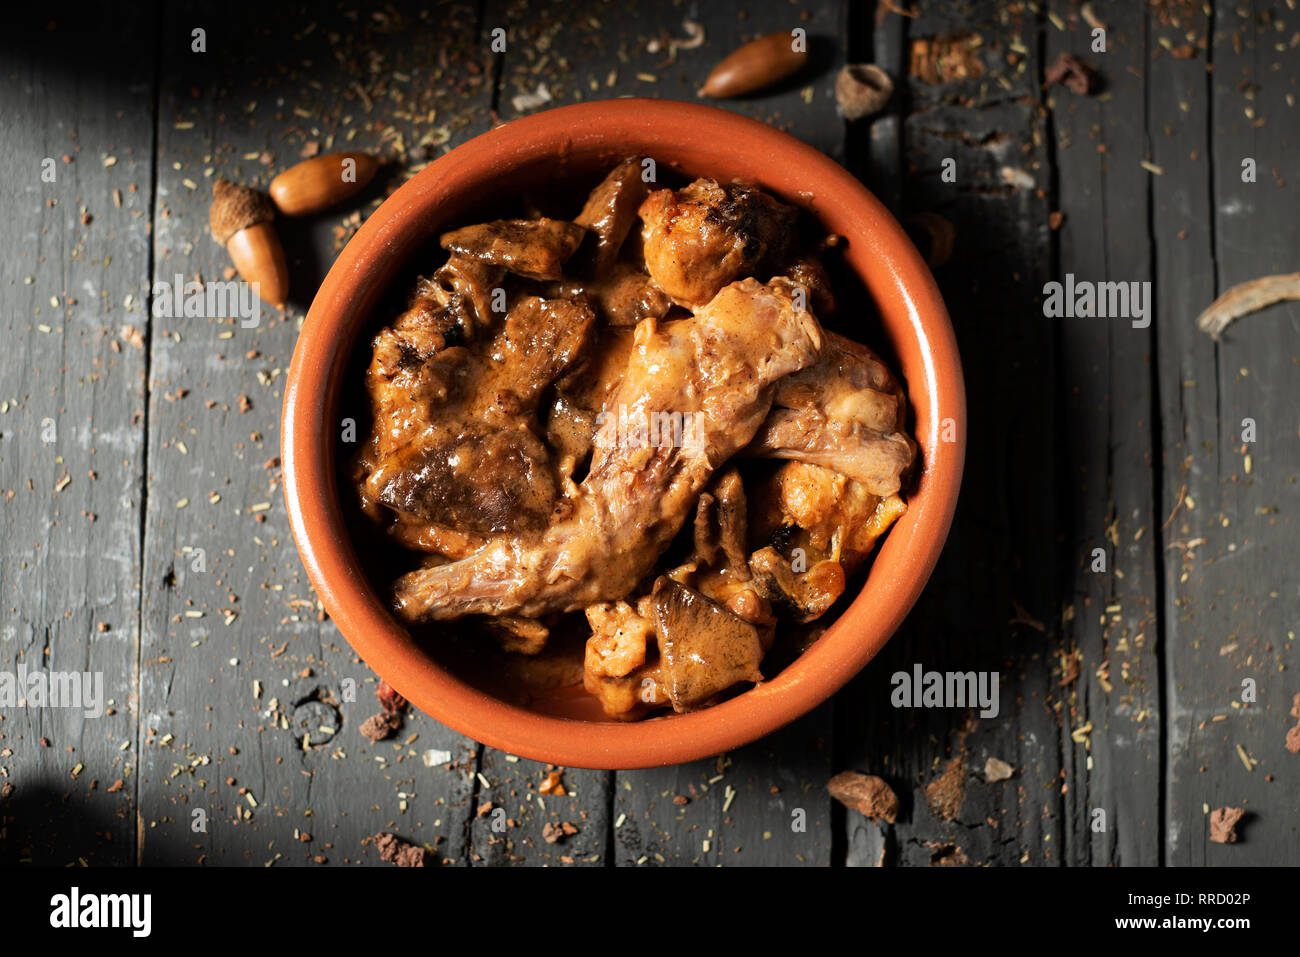 Portrait d'une cocotte en terre cuite avec quelques morceaux de lapin, les pruneaux et les champignons, généralement consommé en Espagne, sur une table en bois rustique gris Banque D'Images